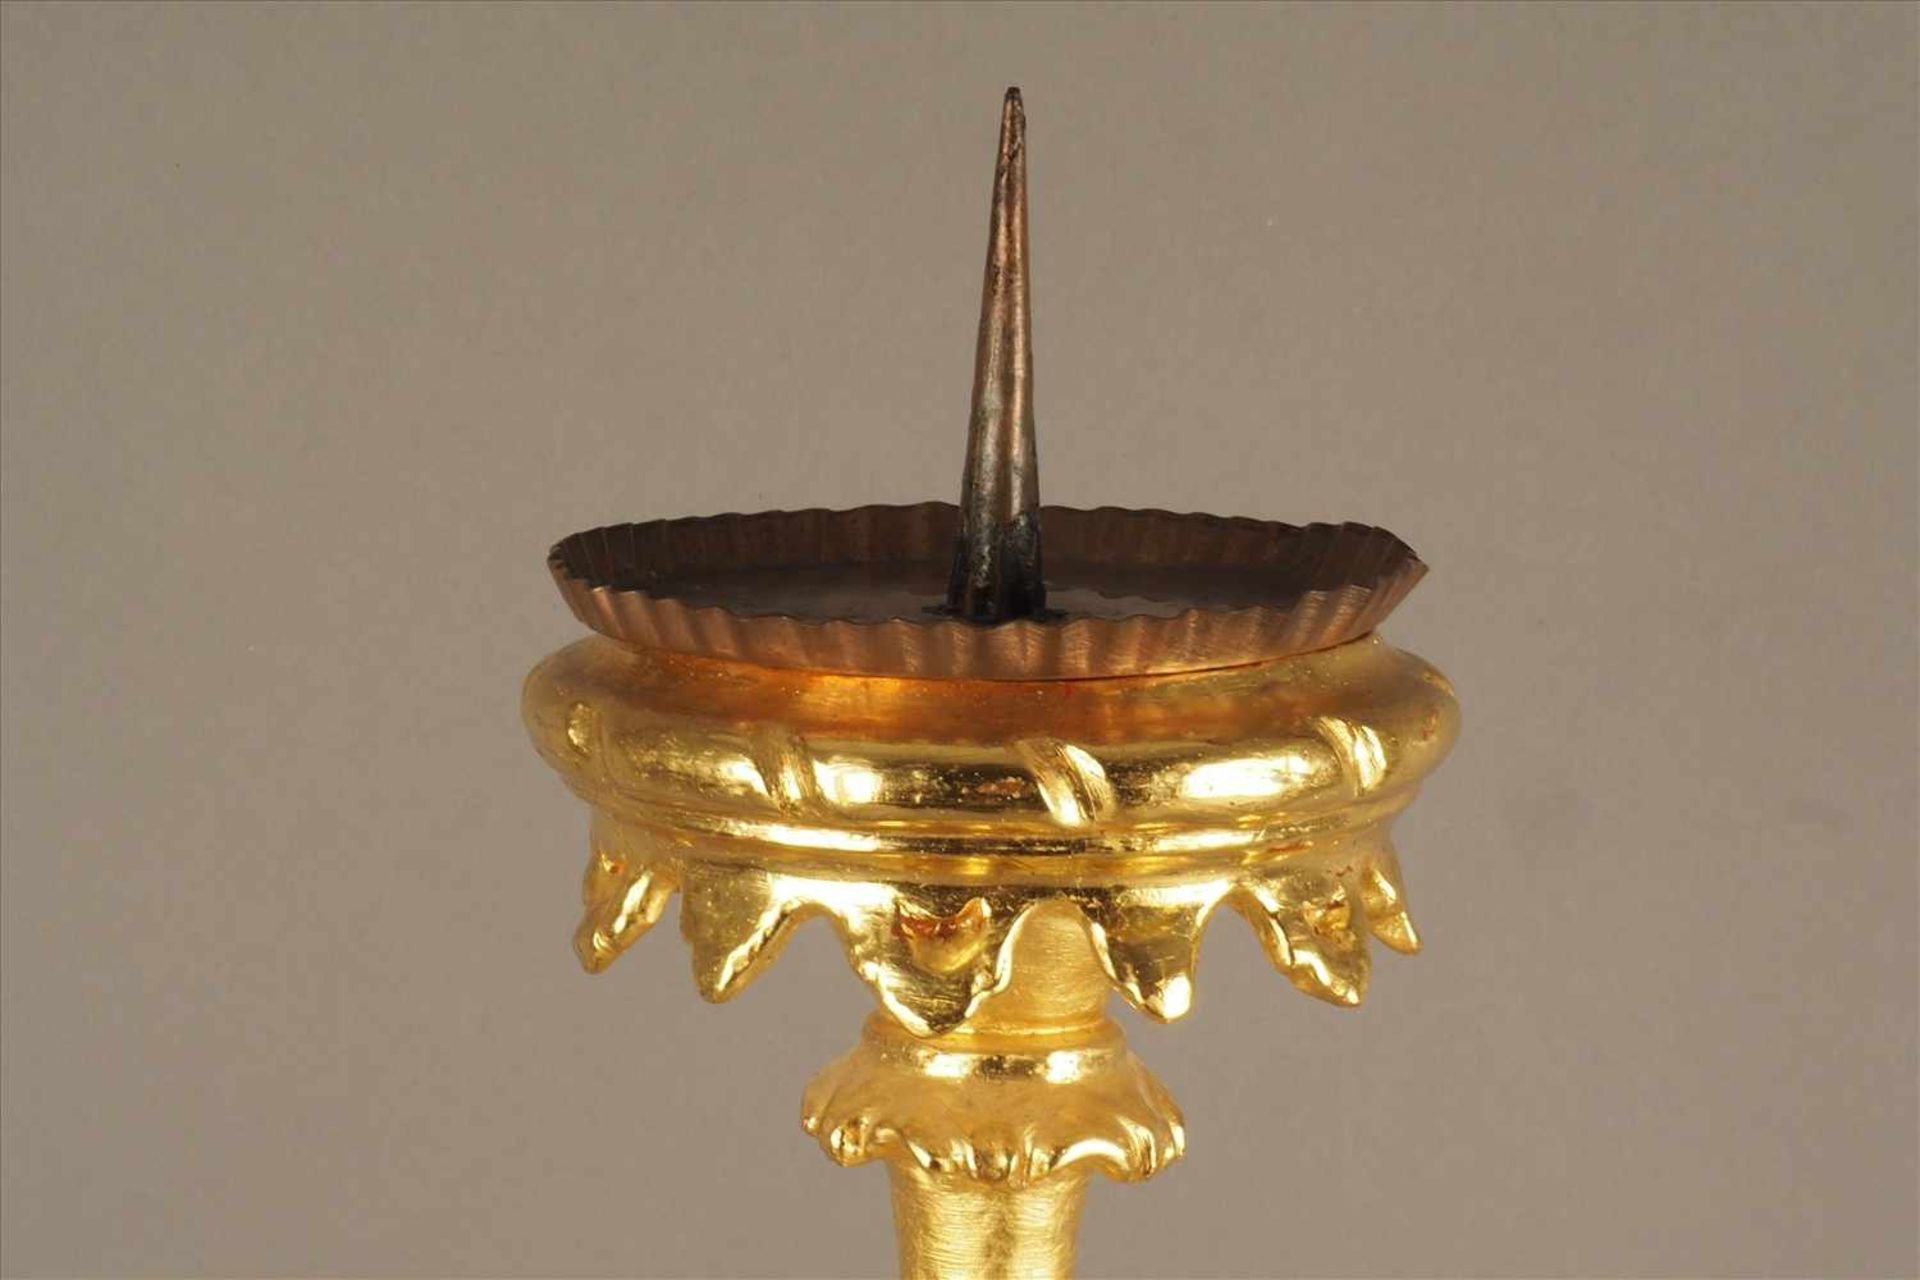 Barocker KerzenständerHolz geschnitzt, vergoldet, Fassung ergänzt, 18. Jh.,Maße: H83cm. - Bild 2 aus 4